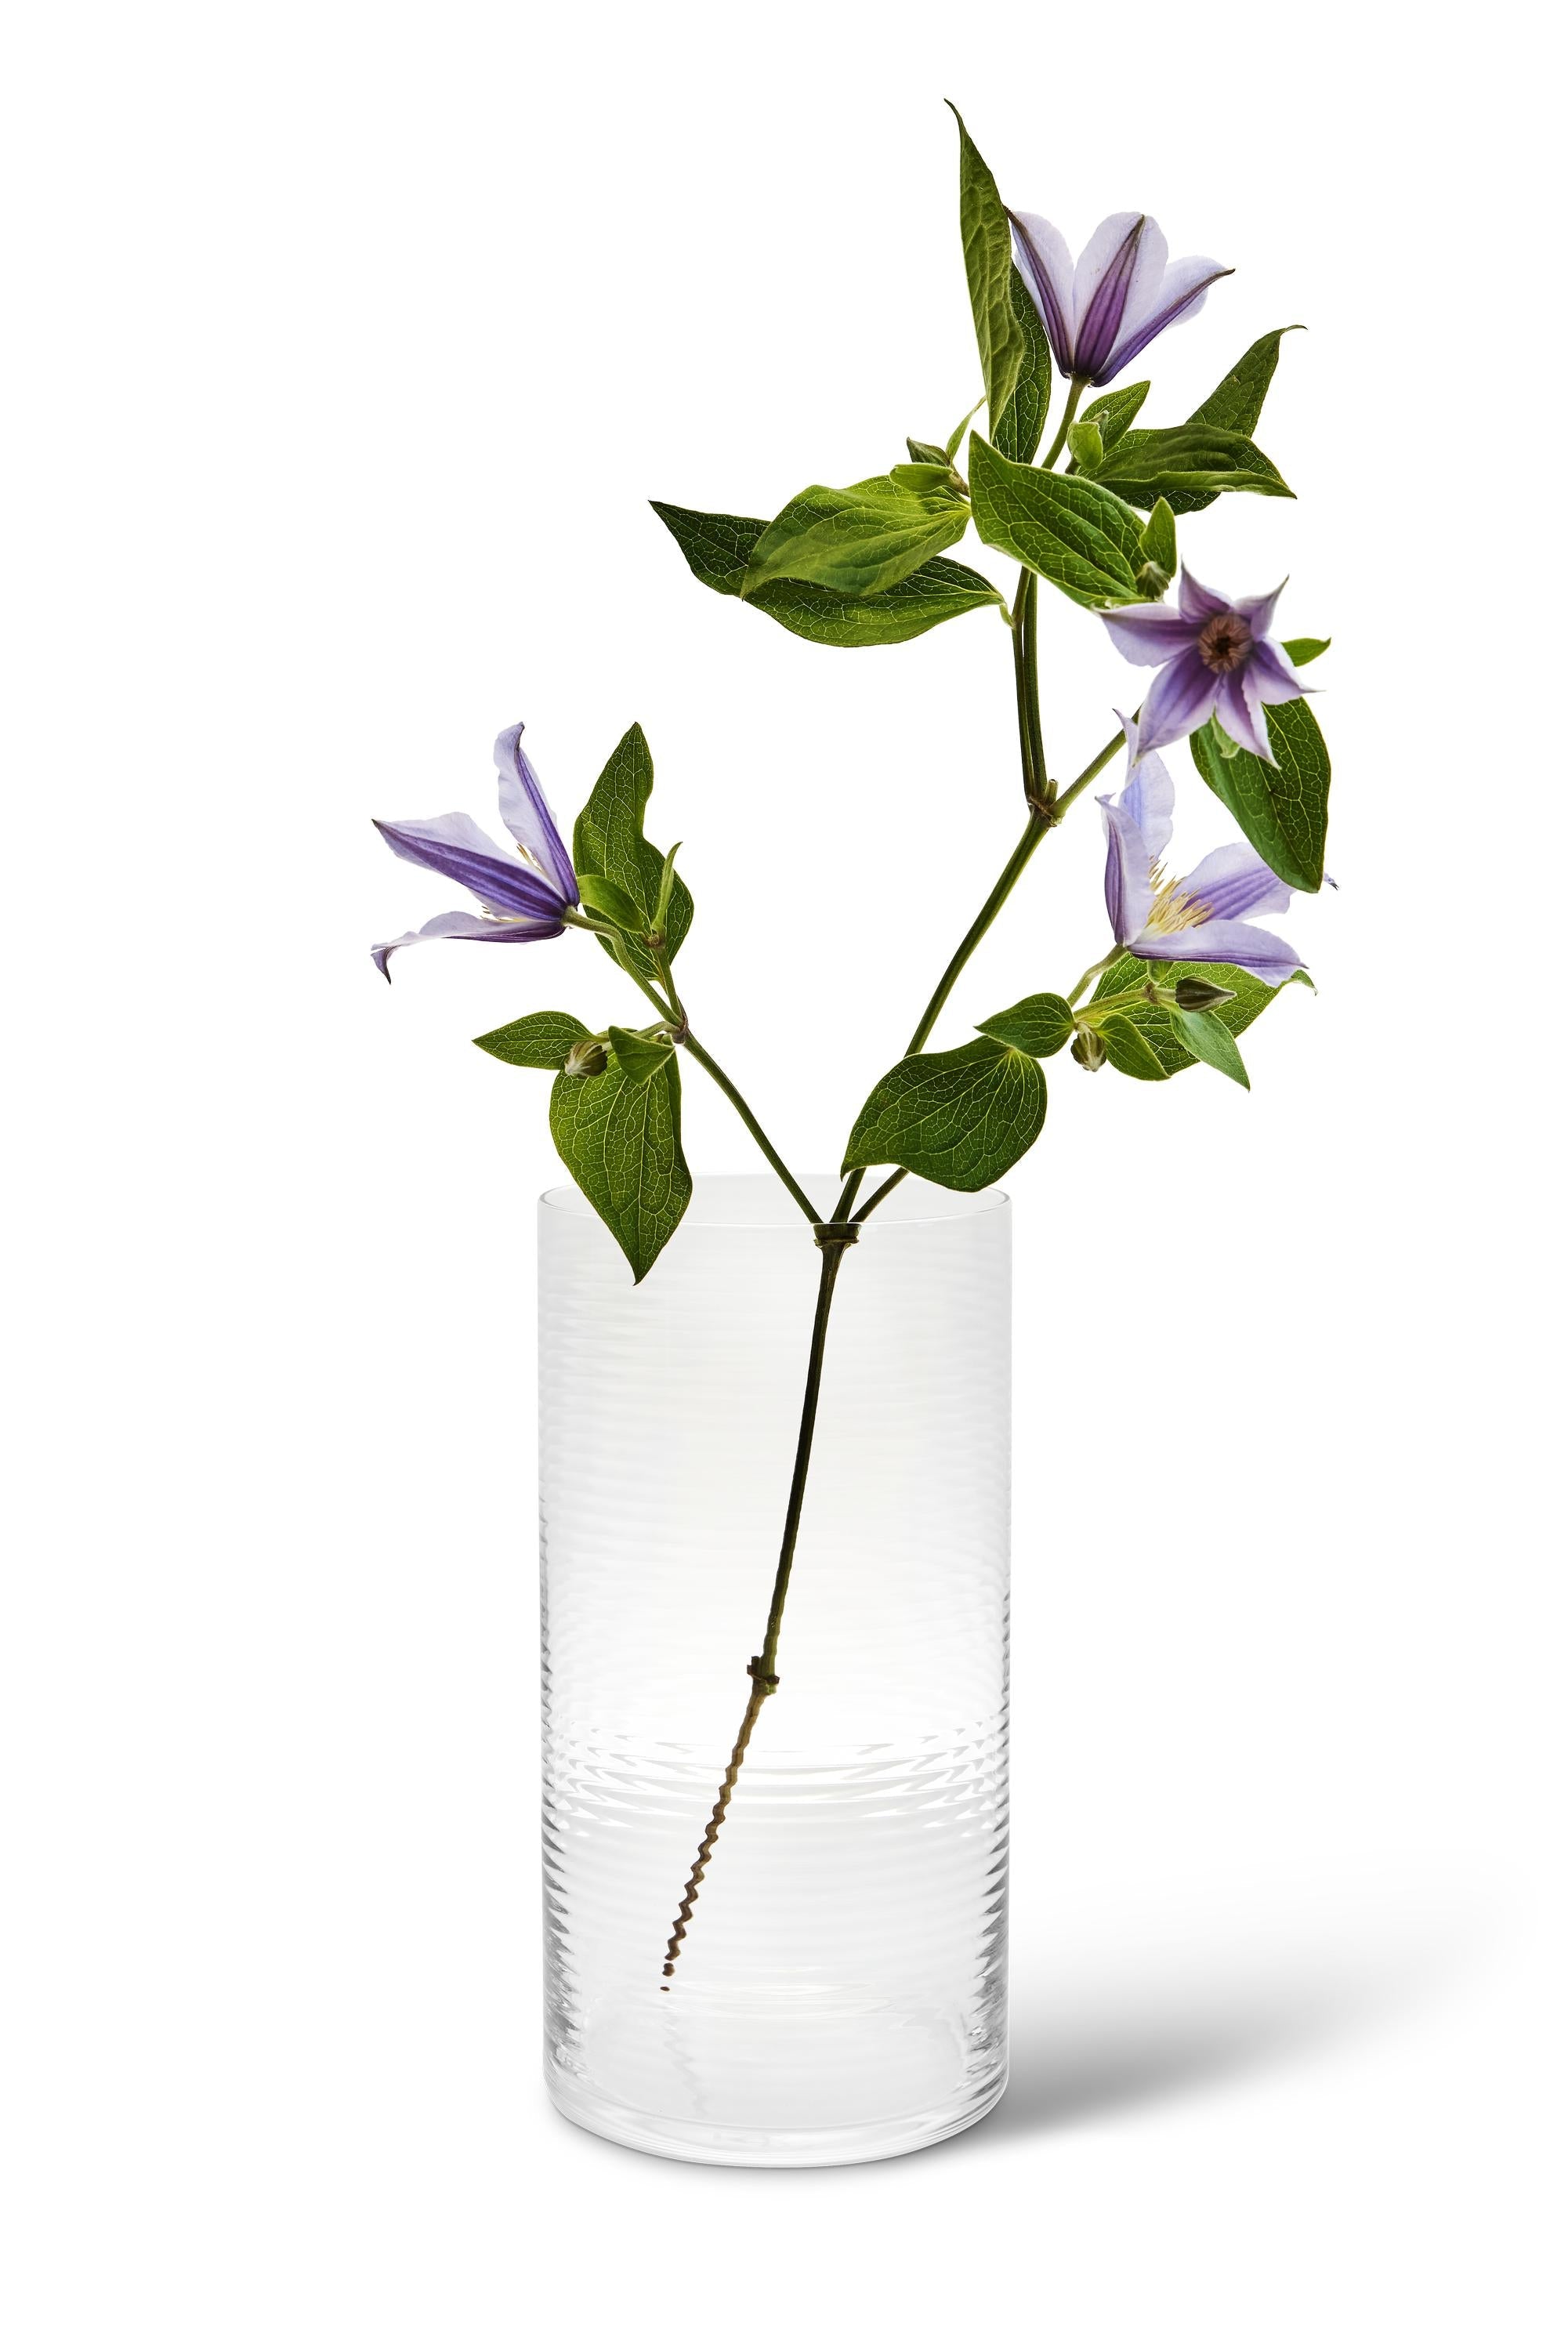 Spring Copenhagen Laine zylindrische Vase